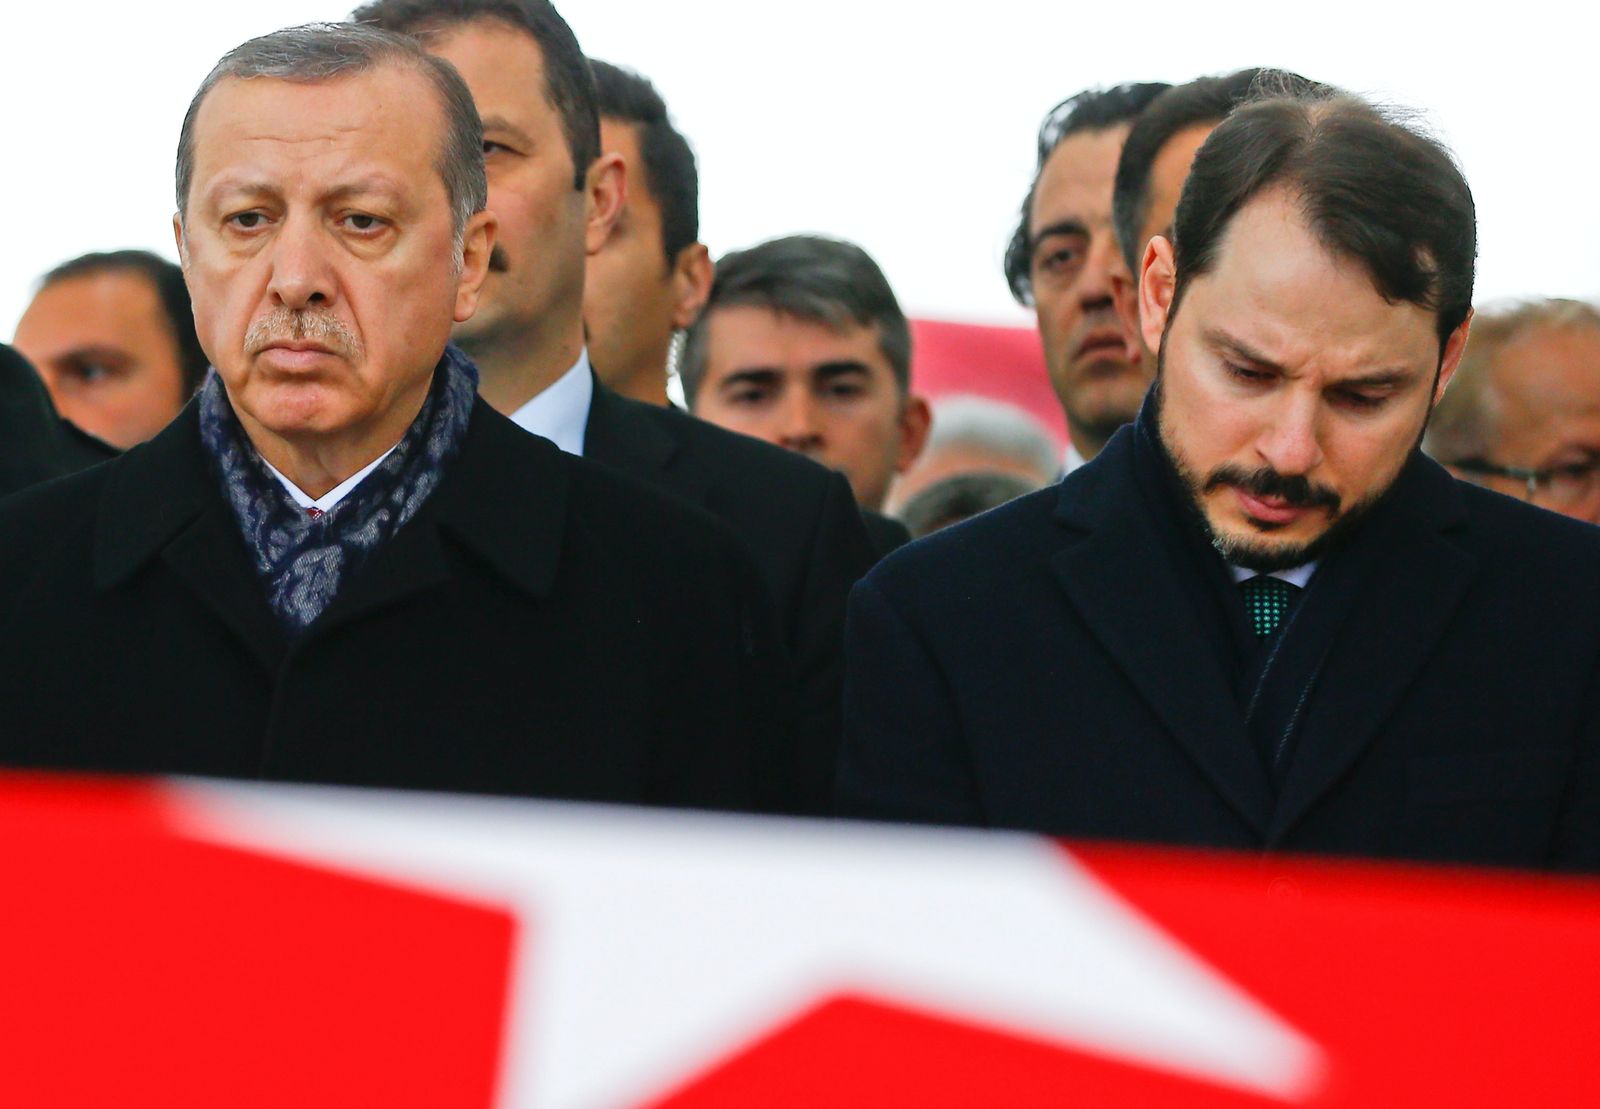 الرئيس التركي رجب طيب أردوغان برفقة صهره، بيرات البيرق، الذي يشغل منصب وزير المال - 2016 - REUTERS